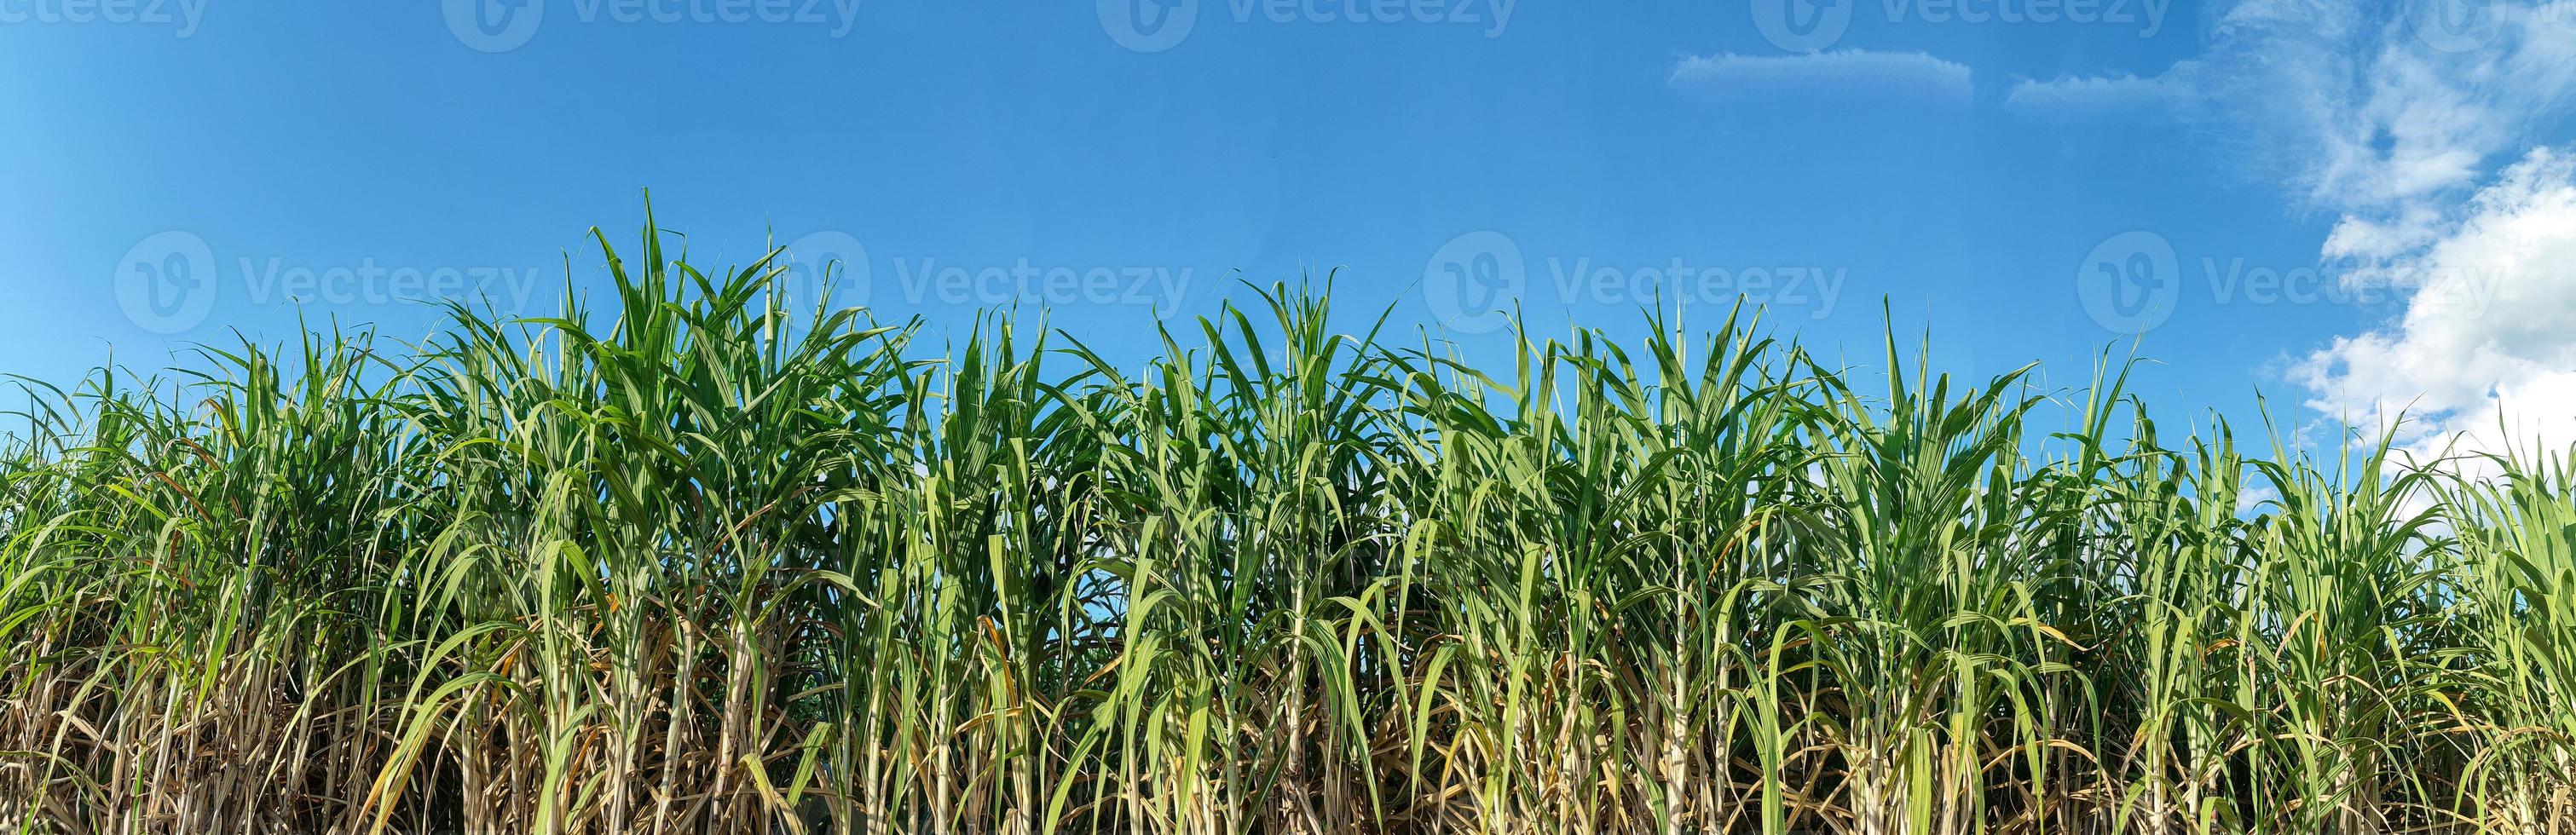 campos de caña de azúcar y cielo azul foto